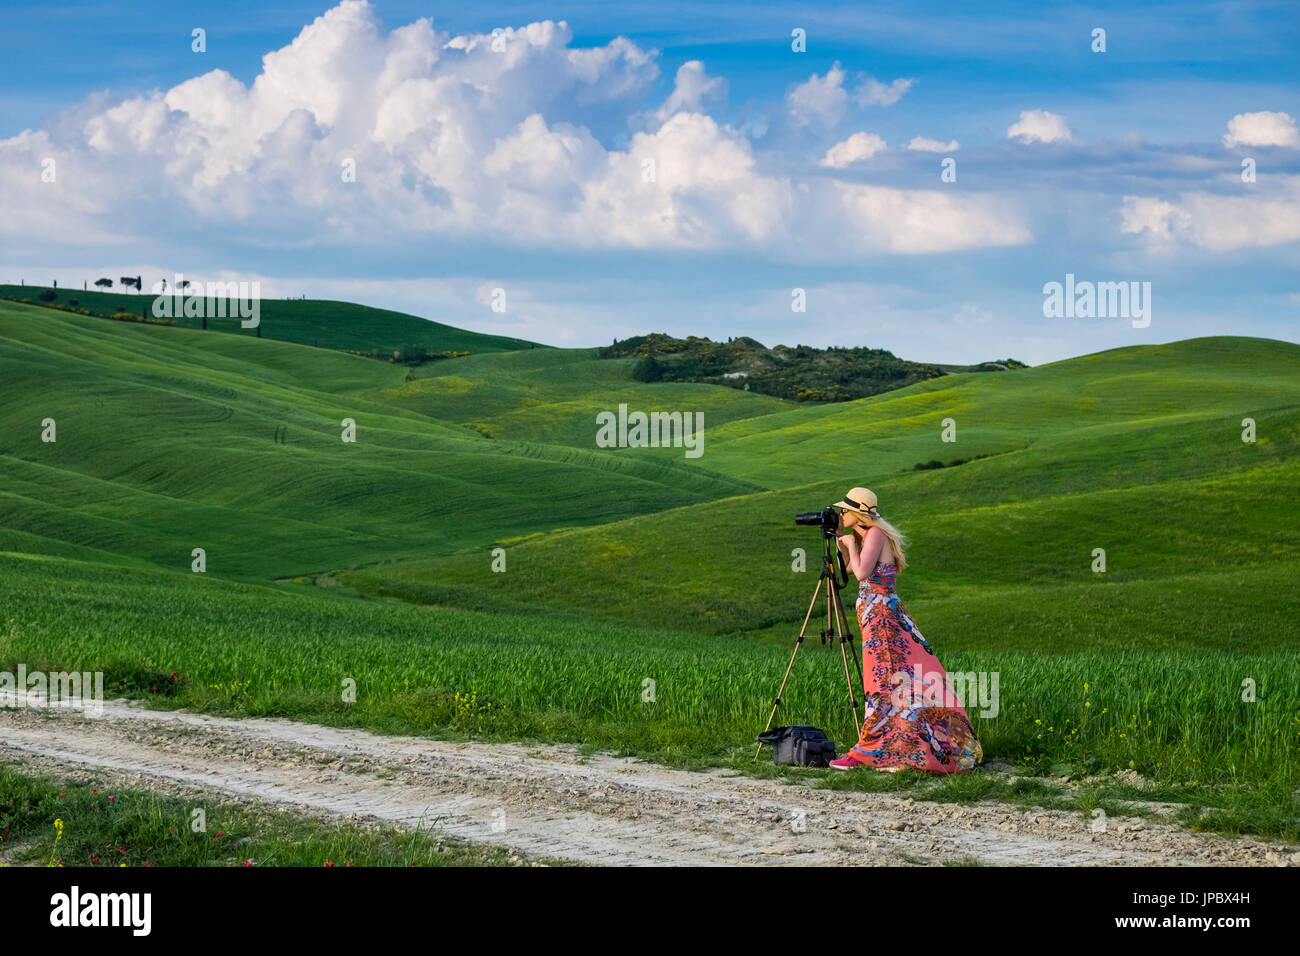 Valle de Orcia, distrito de Siena, Toscana, Italia, Europa. Mujer con sombrero toma fotografías en campos verdes. Foto de stock